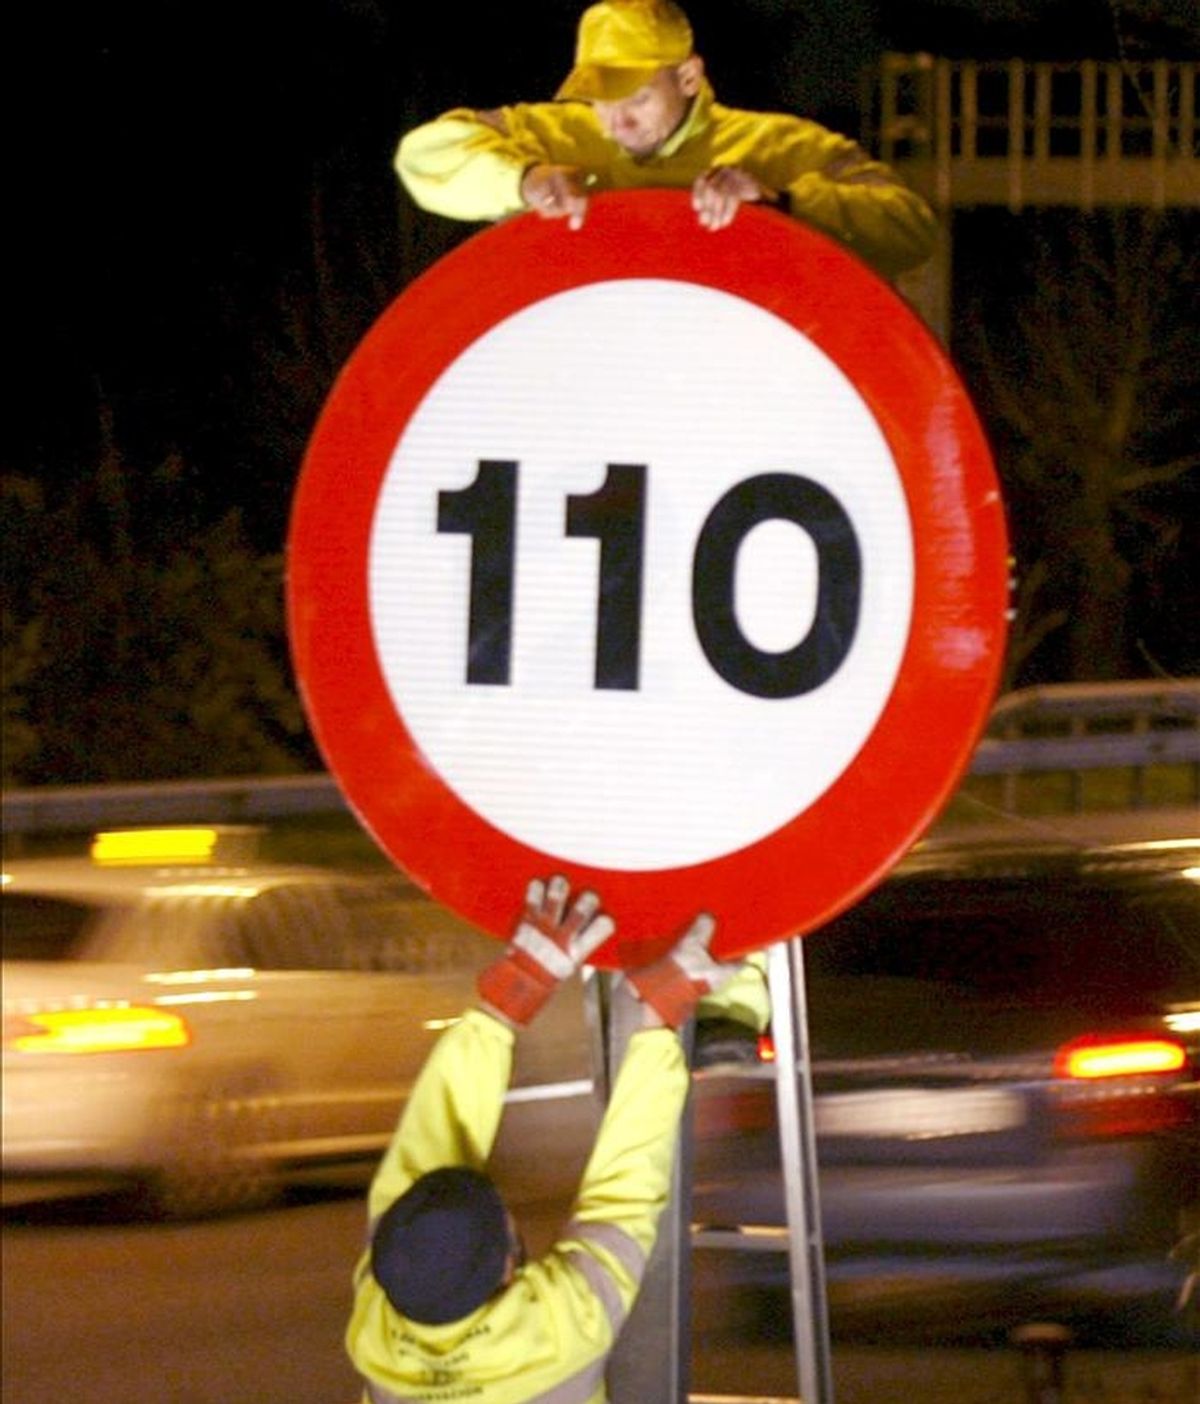 Varios operarios colocan el límite de velocidad de 110 kilómetros/hora en una señal de la A-2 situada en el kilómetro 6, en Madrid. EFE/Archivo